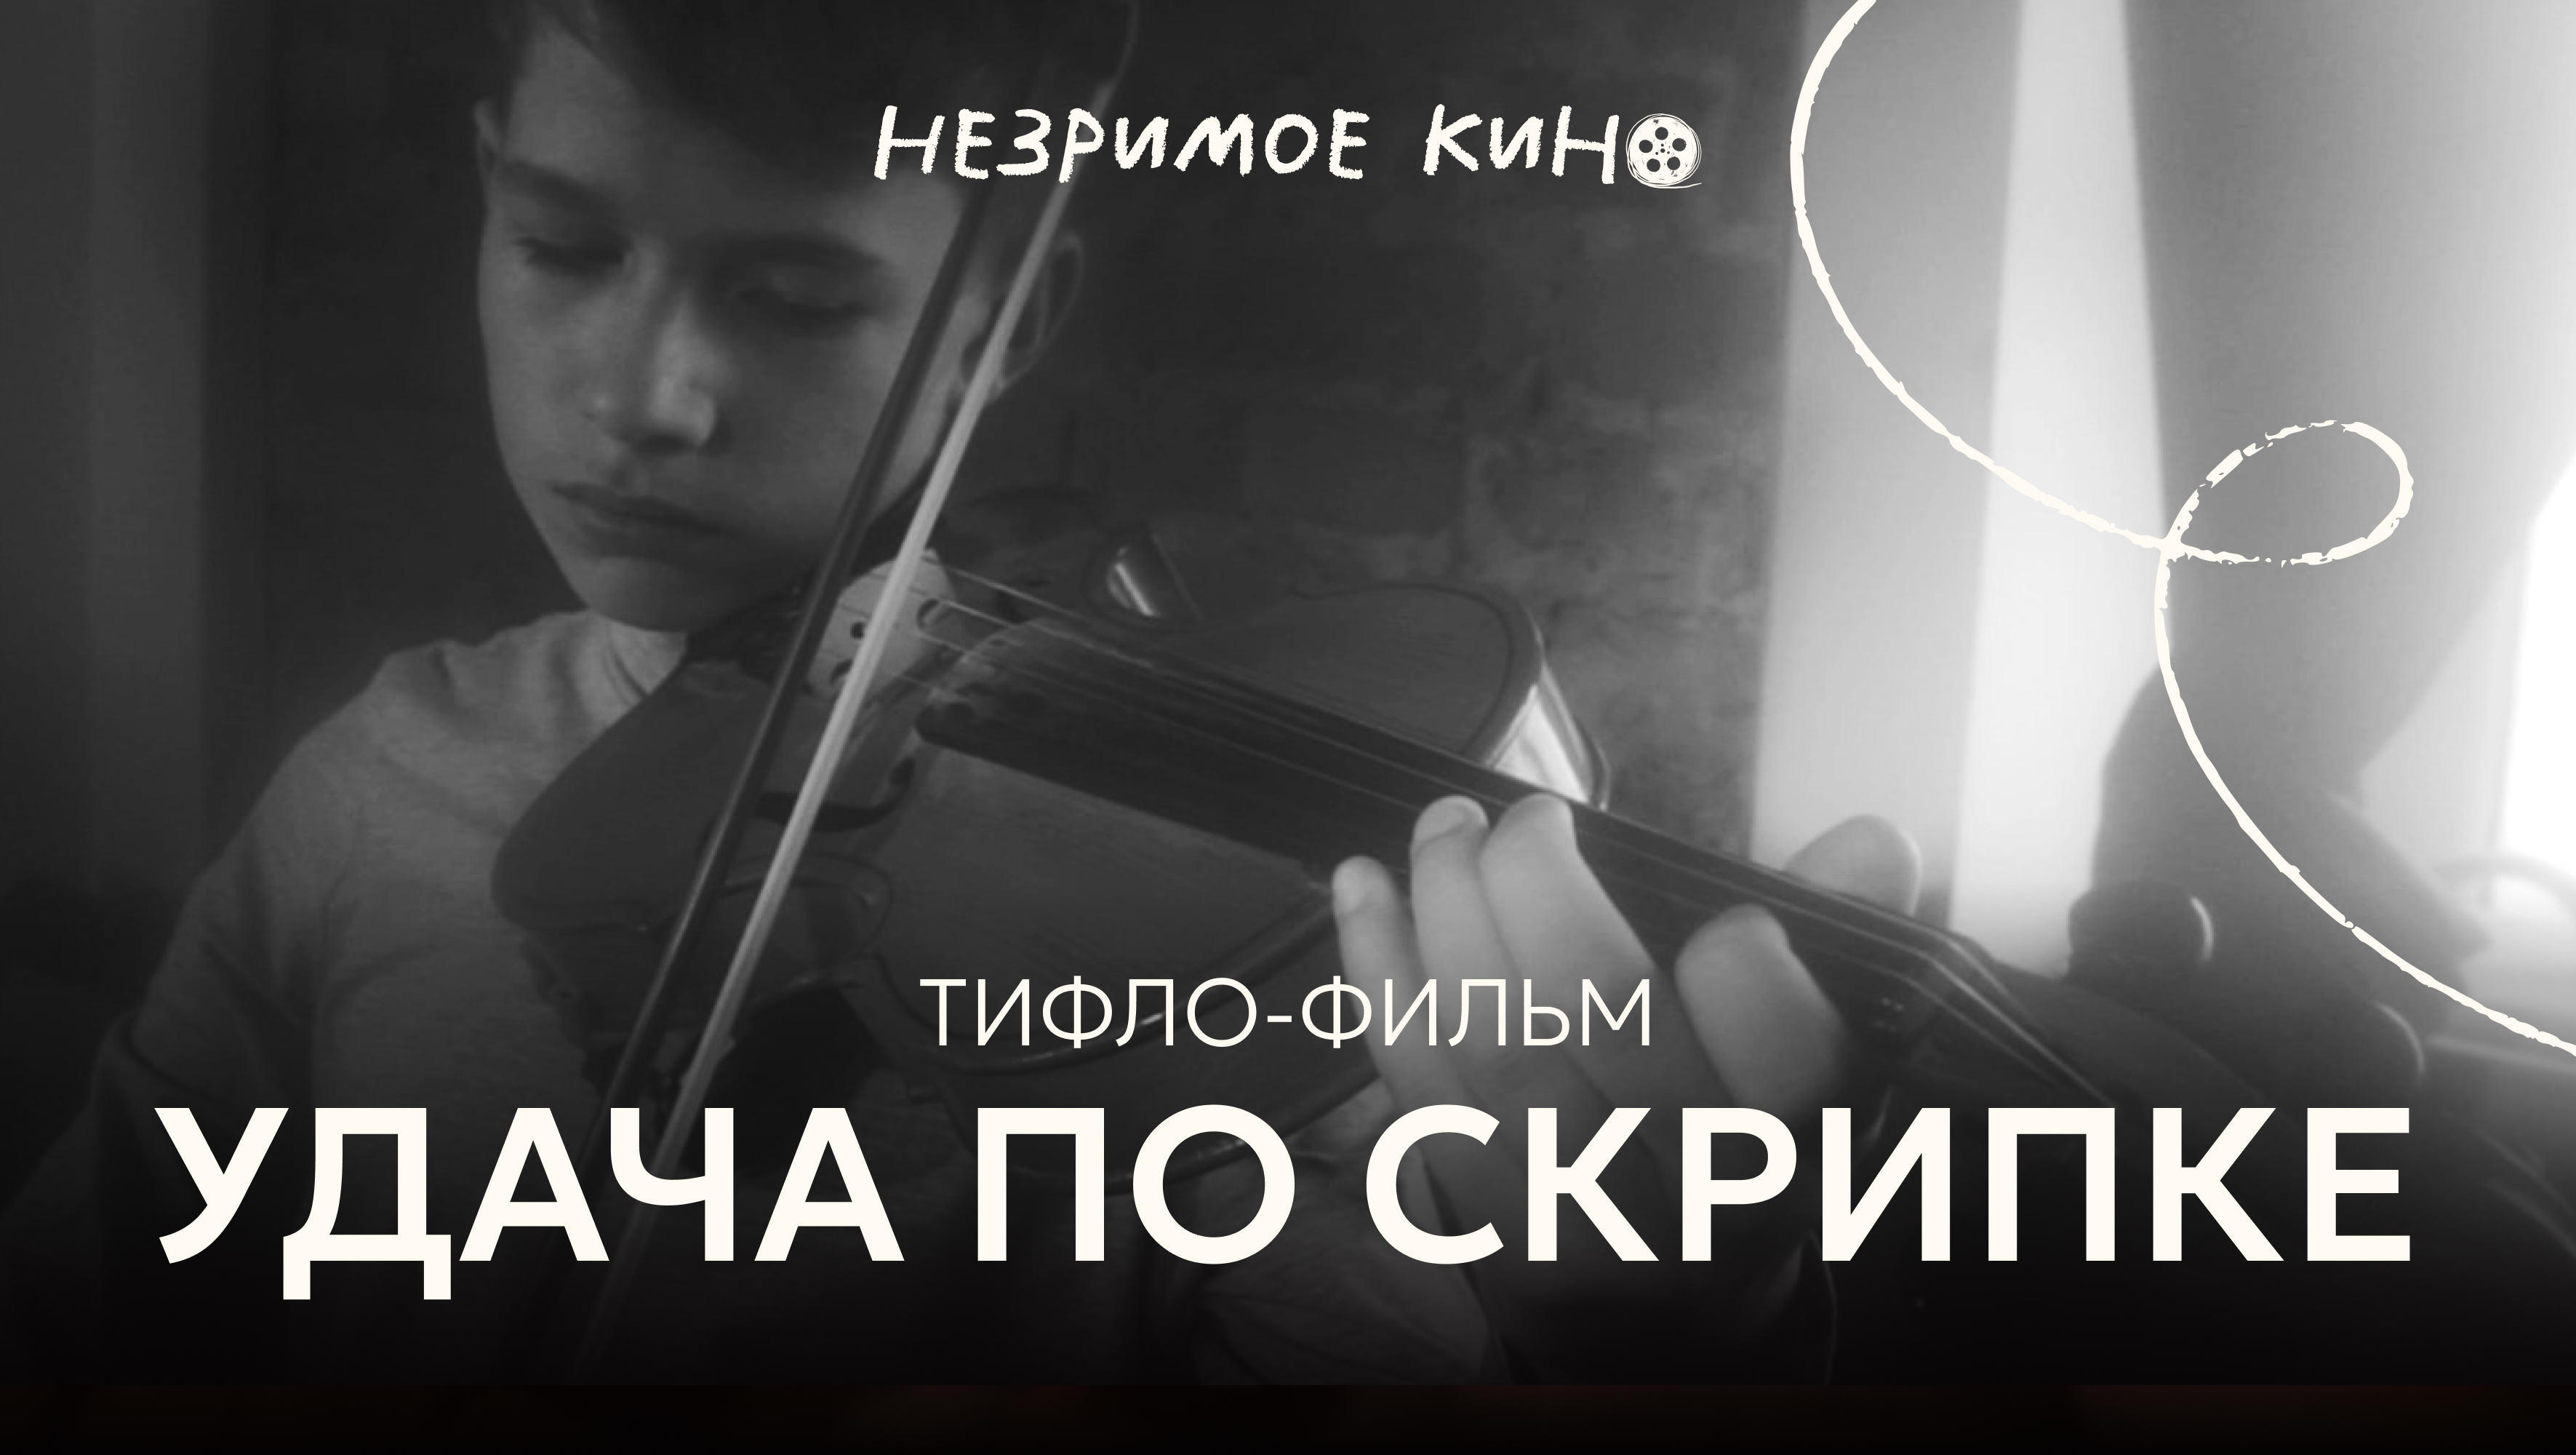 «Удача по скрипке» (реж. Никита Гладков) – короткометражный фильм с тифлокомментариями для незрячих